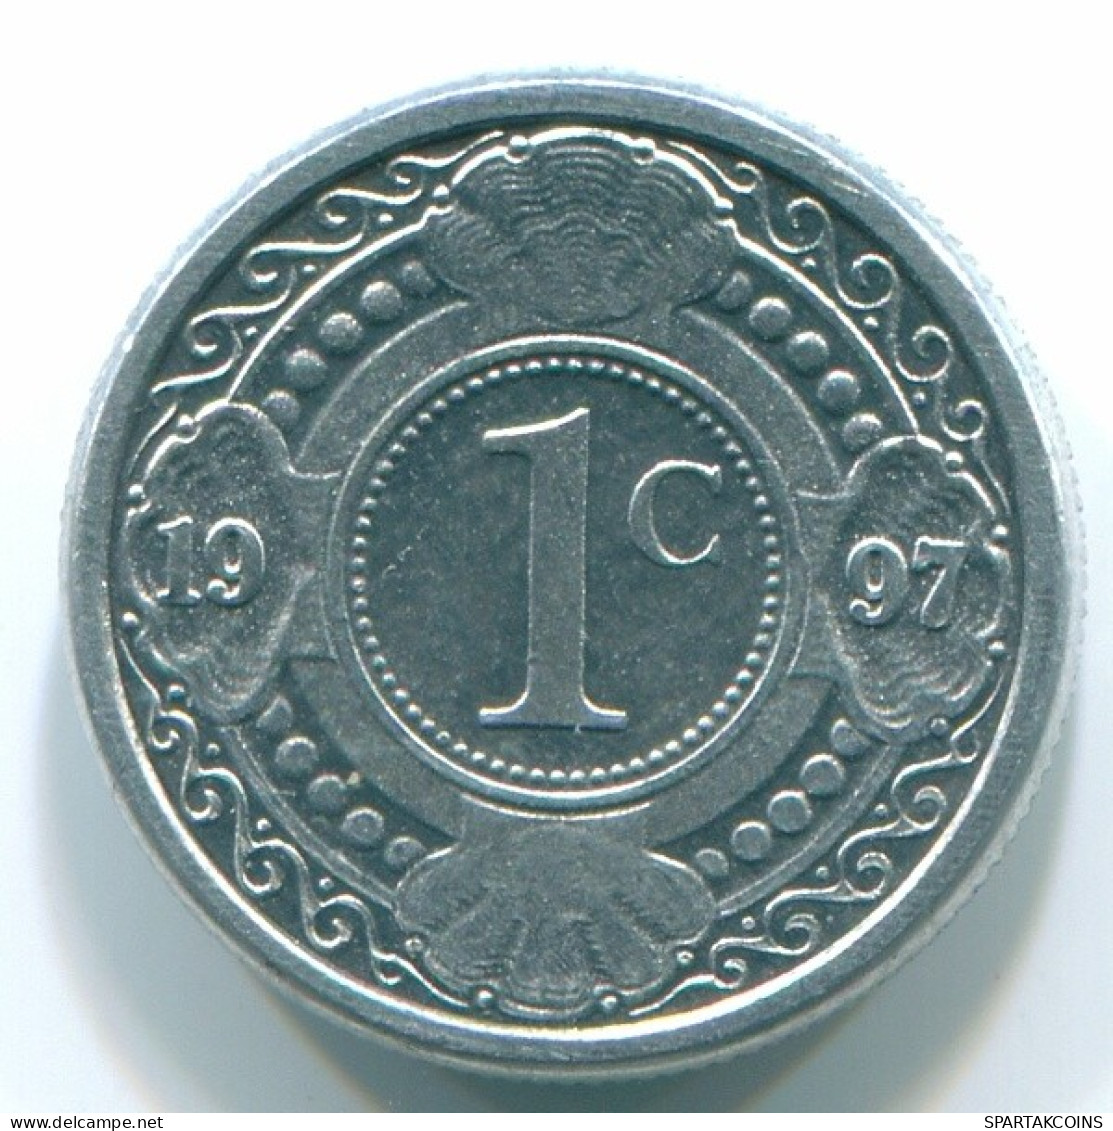 1 CENT 1996 NETHERLANDS ANTILLES Aluminium Colonial Coin #S13147.U.A - Niederländische Antillen